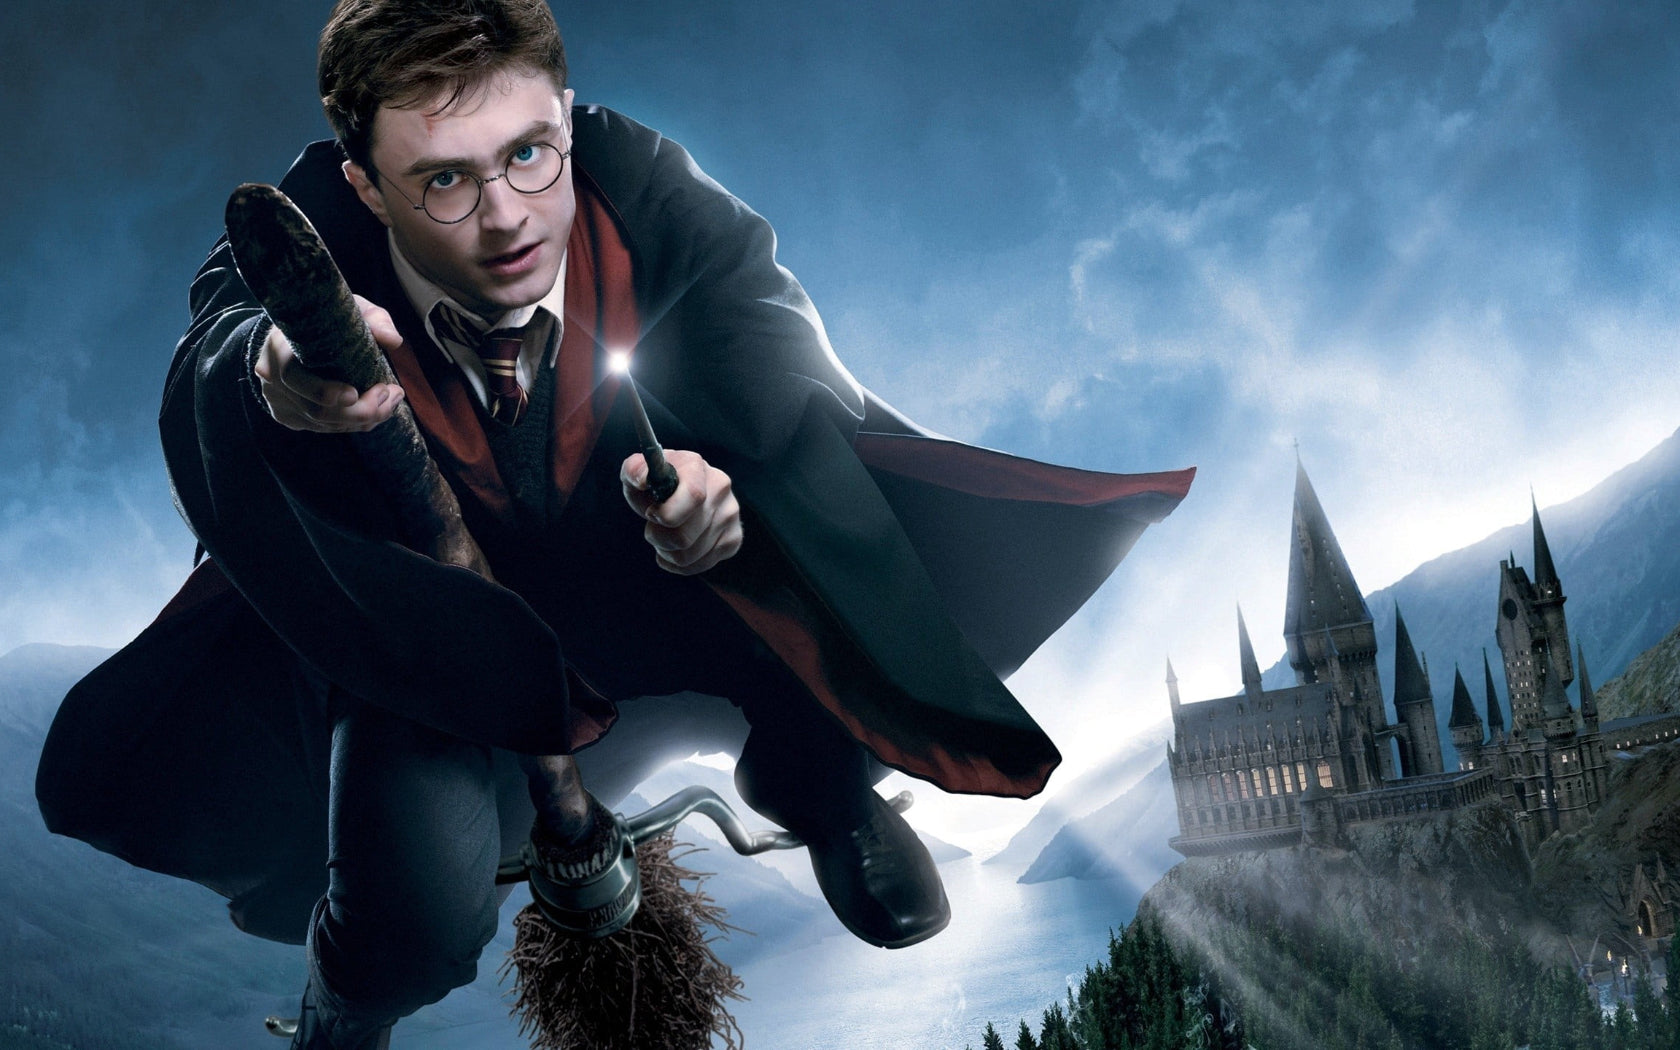 Harry Potter - Hogwarts Castle - Poster